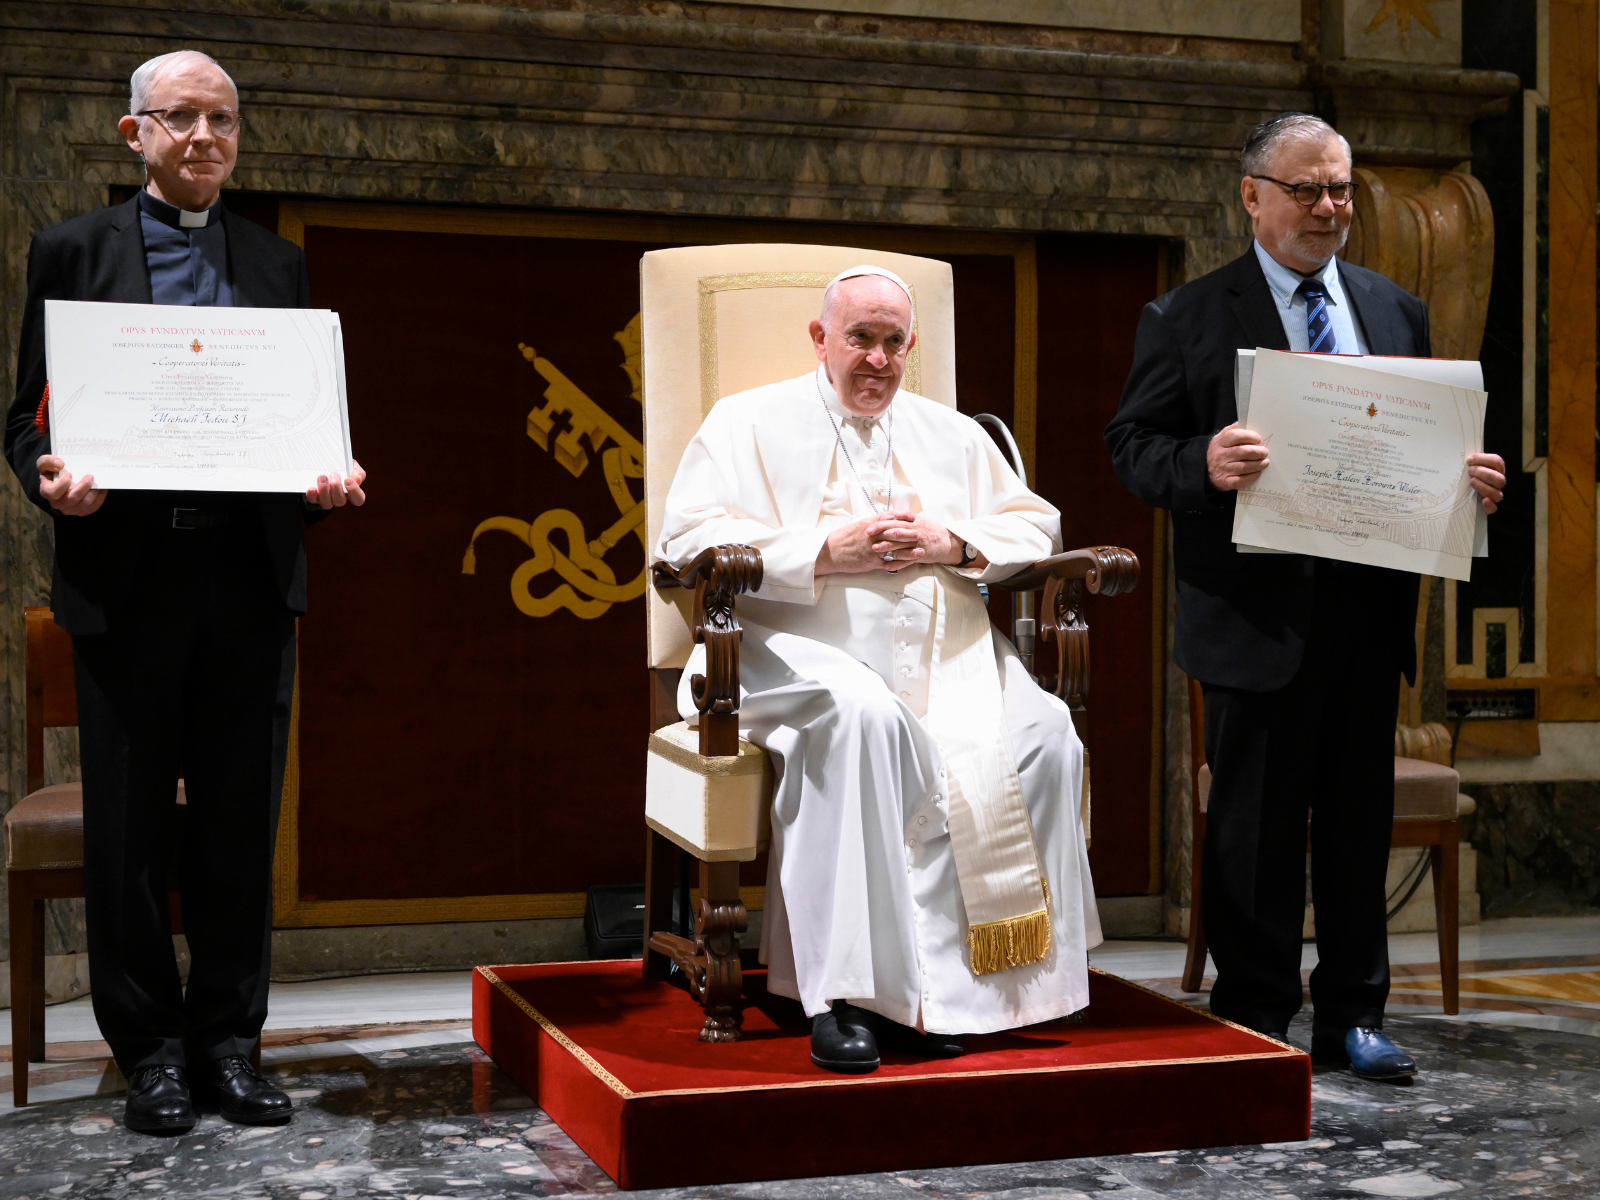 El Papa pronuncia el discurso del Premio Ratzinger: “líneas de